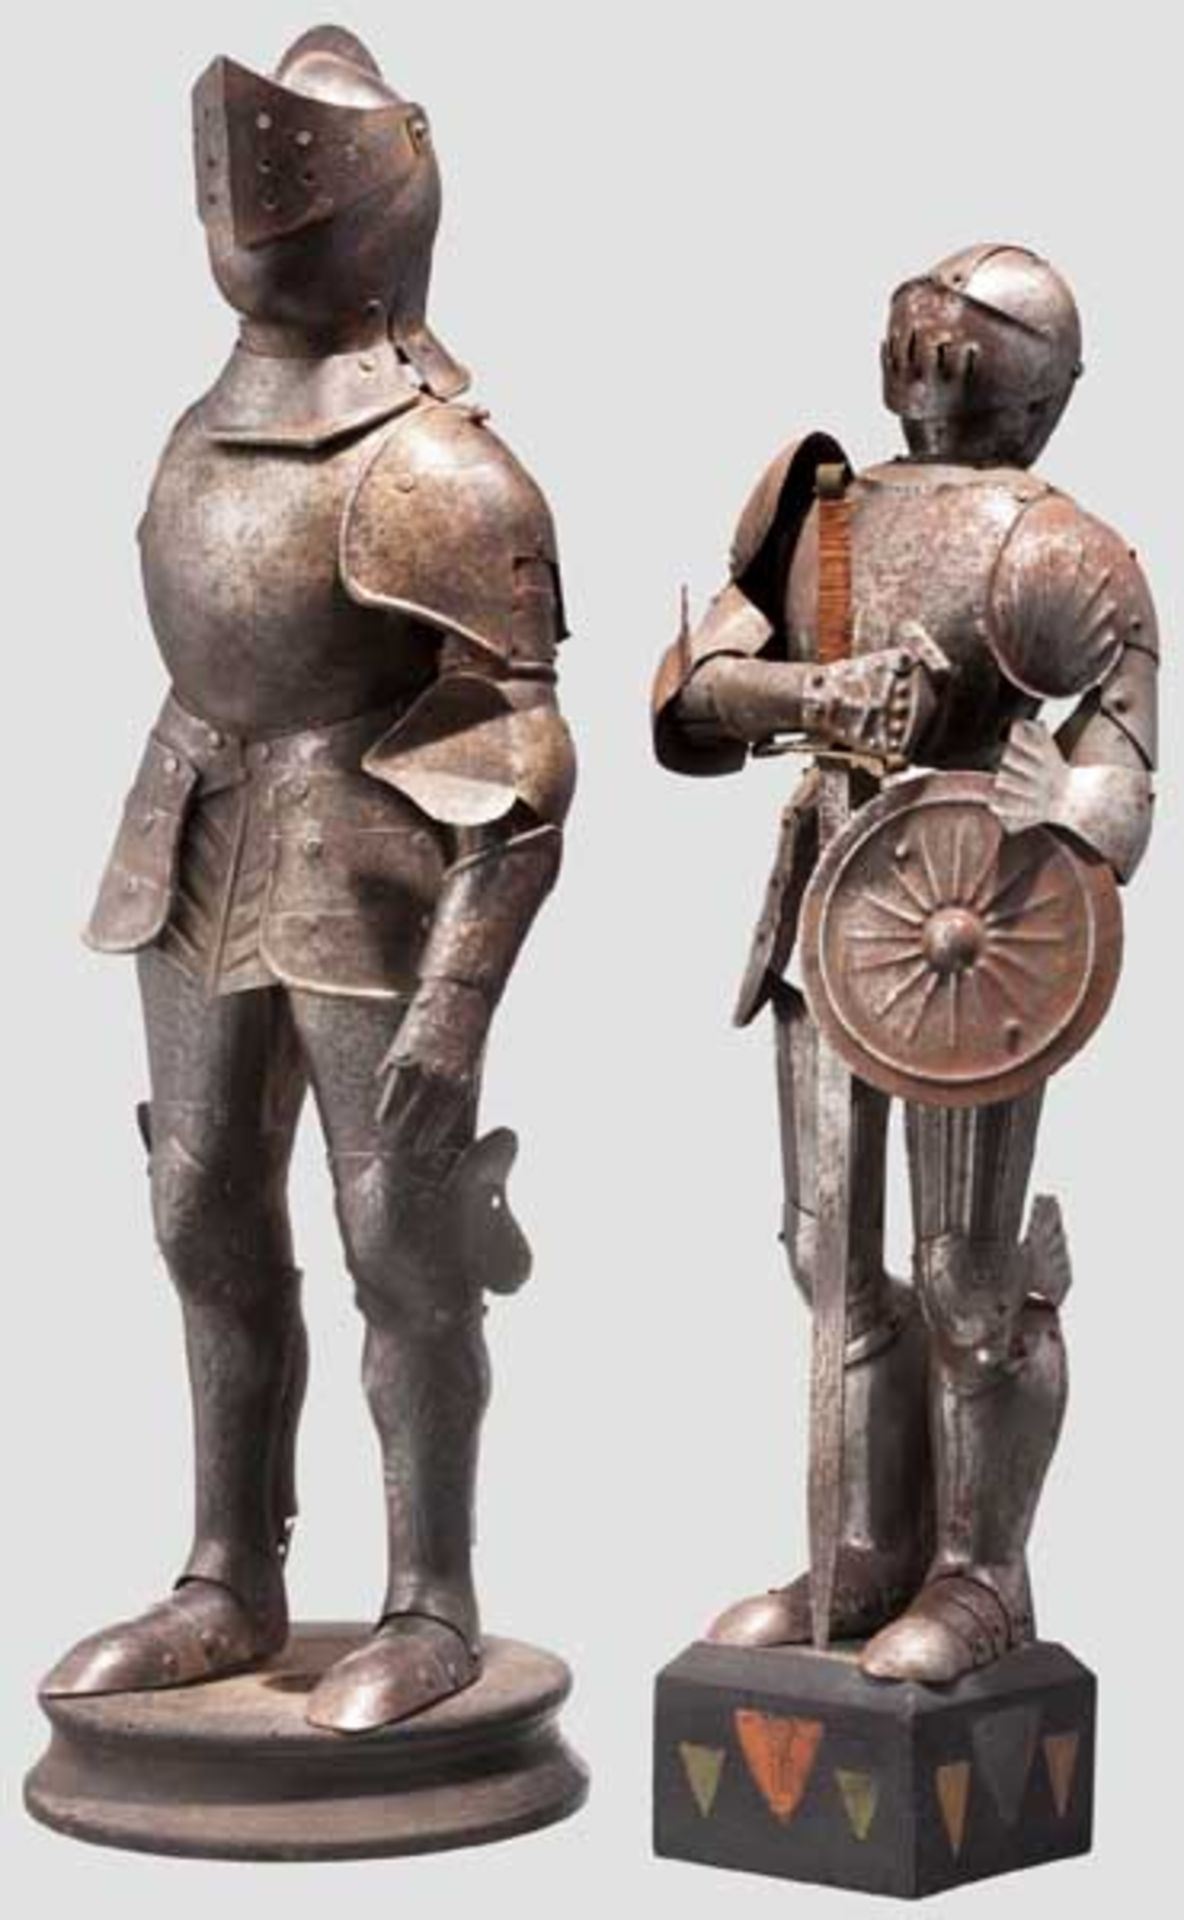 Zwei Miniatur-Ritterrüstungen im Stil des 16. Jhdts. um 1900/20. Jhdt. Jeweils mehrteilig aus